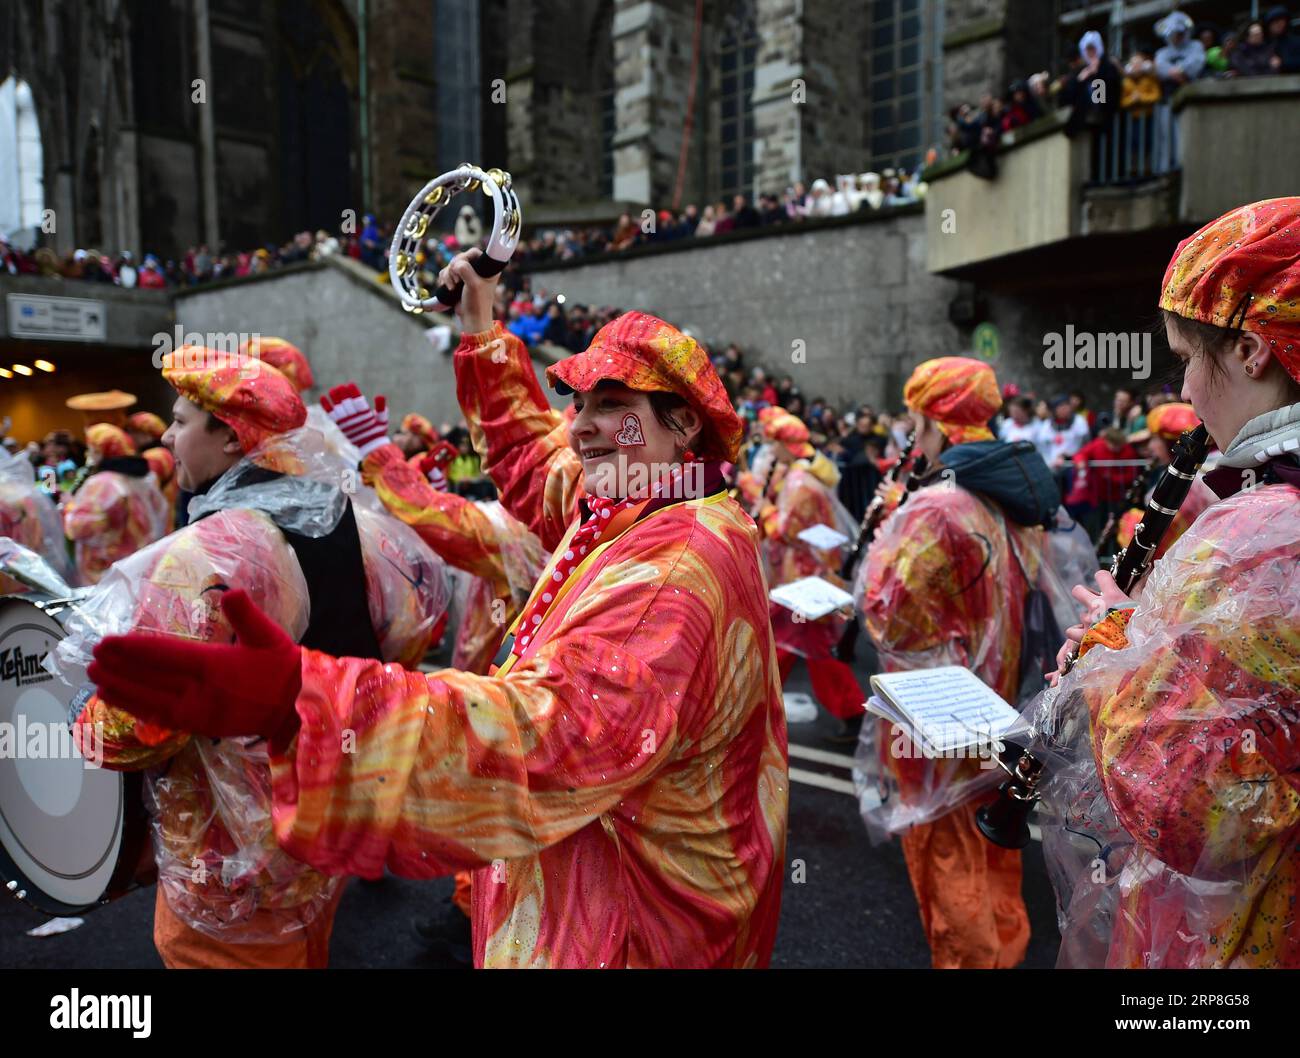 (190304) -- KÖLN (DEUTSCHLAND), 4. März 2019 (Xinhua) -- Feiernde nehmen an der Rosenmontagsparade in Köln am 4. März 2019 Teil. Die Rosenmontagsparade markiert den Höhepunkt des jährlichen Kölner Karnevals. (Xinhua/Lu Yang) DEUTSCHLAND-KÖLN-KARNEVAL-ROSE MONTAG PARADE PUBLICATIONxNOTxINxCHN Stockfoto